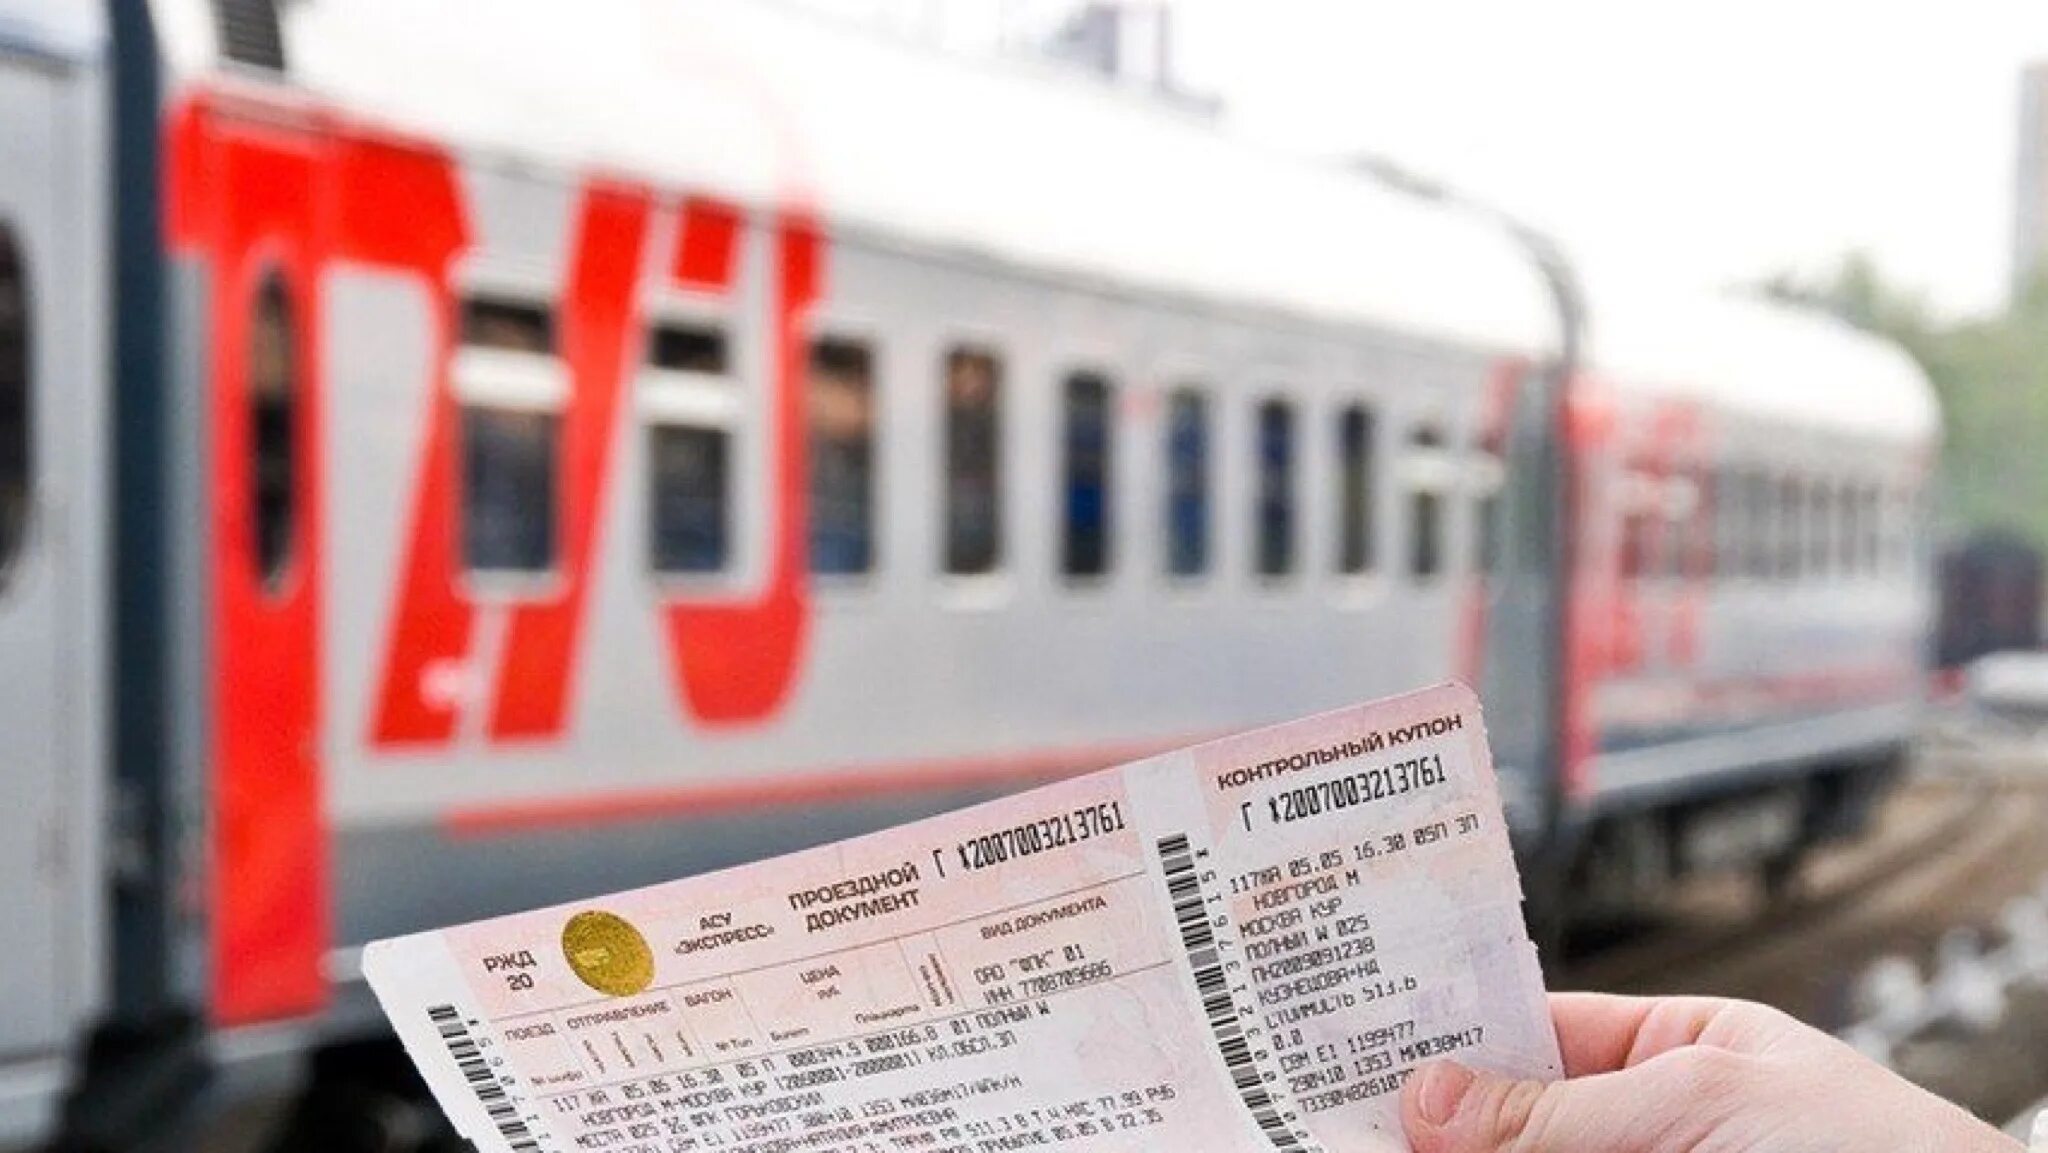 Сидячие билеты на поезд ржд. ЖД билеты. Фото билетов на поезд. Билеты ЖД на поезд. Компенсация проезда.